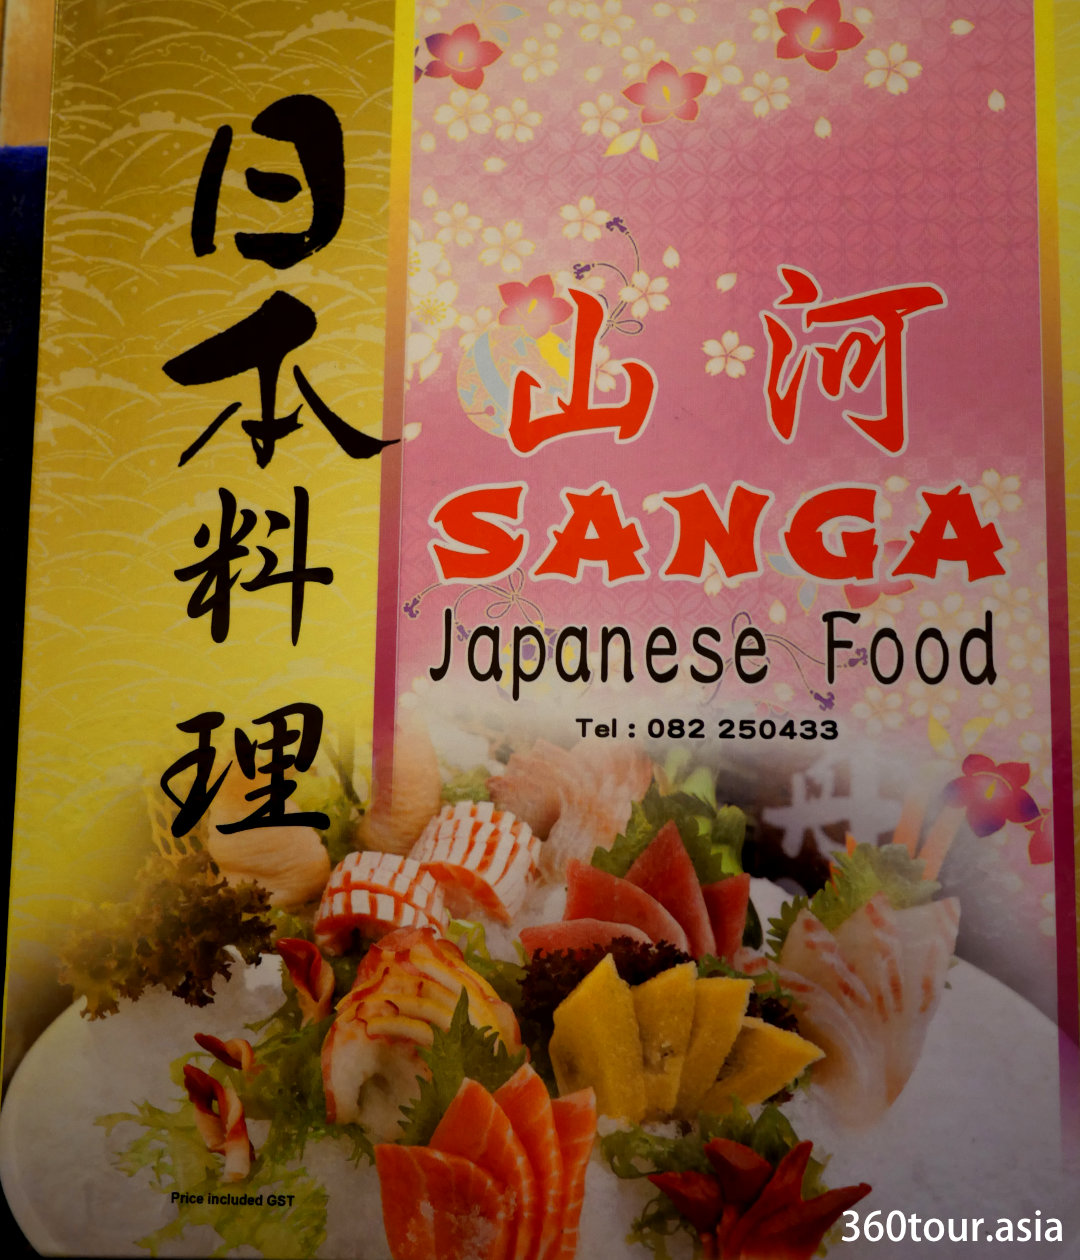 Japanese food sanga